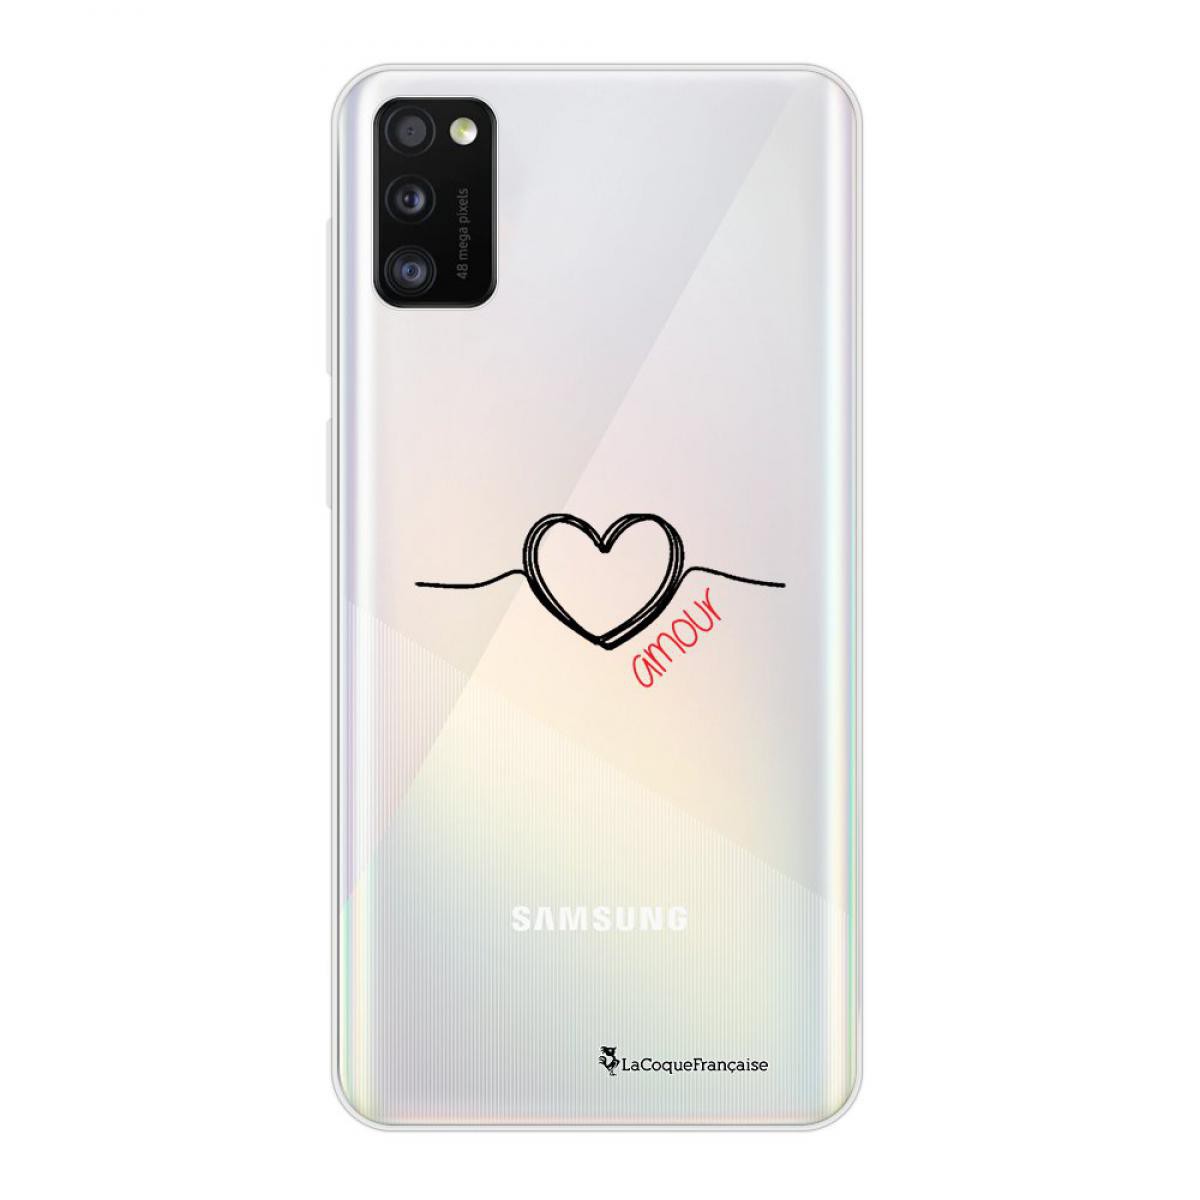 La Coque Francaise - Coque Samsung Galaxy A41 souple transparente Coeur Noir Amour Motif Ecriture Tendance La Coque Francaise - Coque, étui smartphone